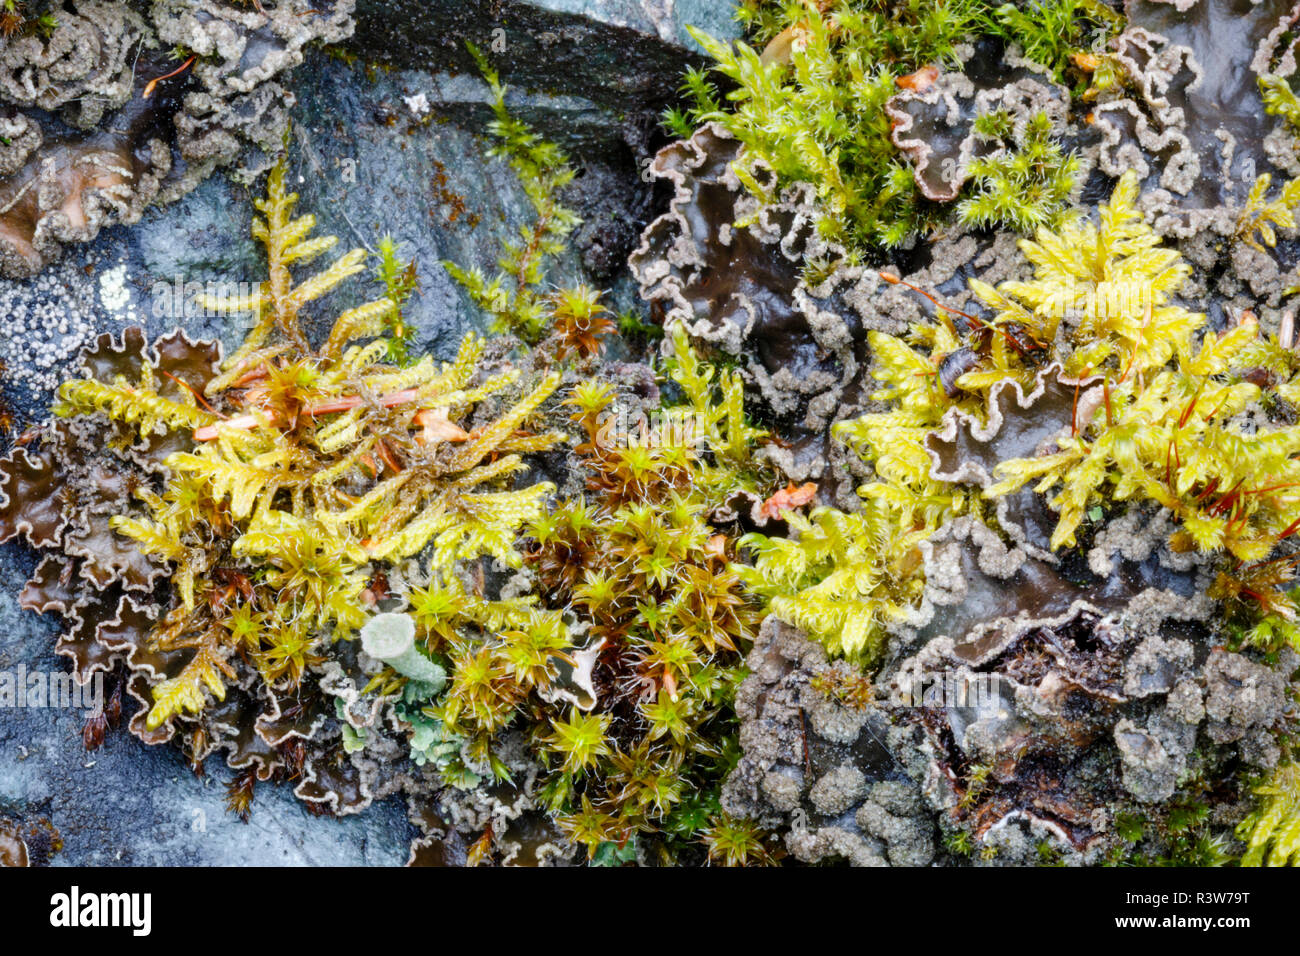 Stati Uniti d'America, in Alaska. Una varietà di muschi e licheni sulla roccia in Alaska centromeridionale. Foto Stock